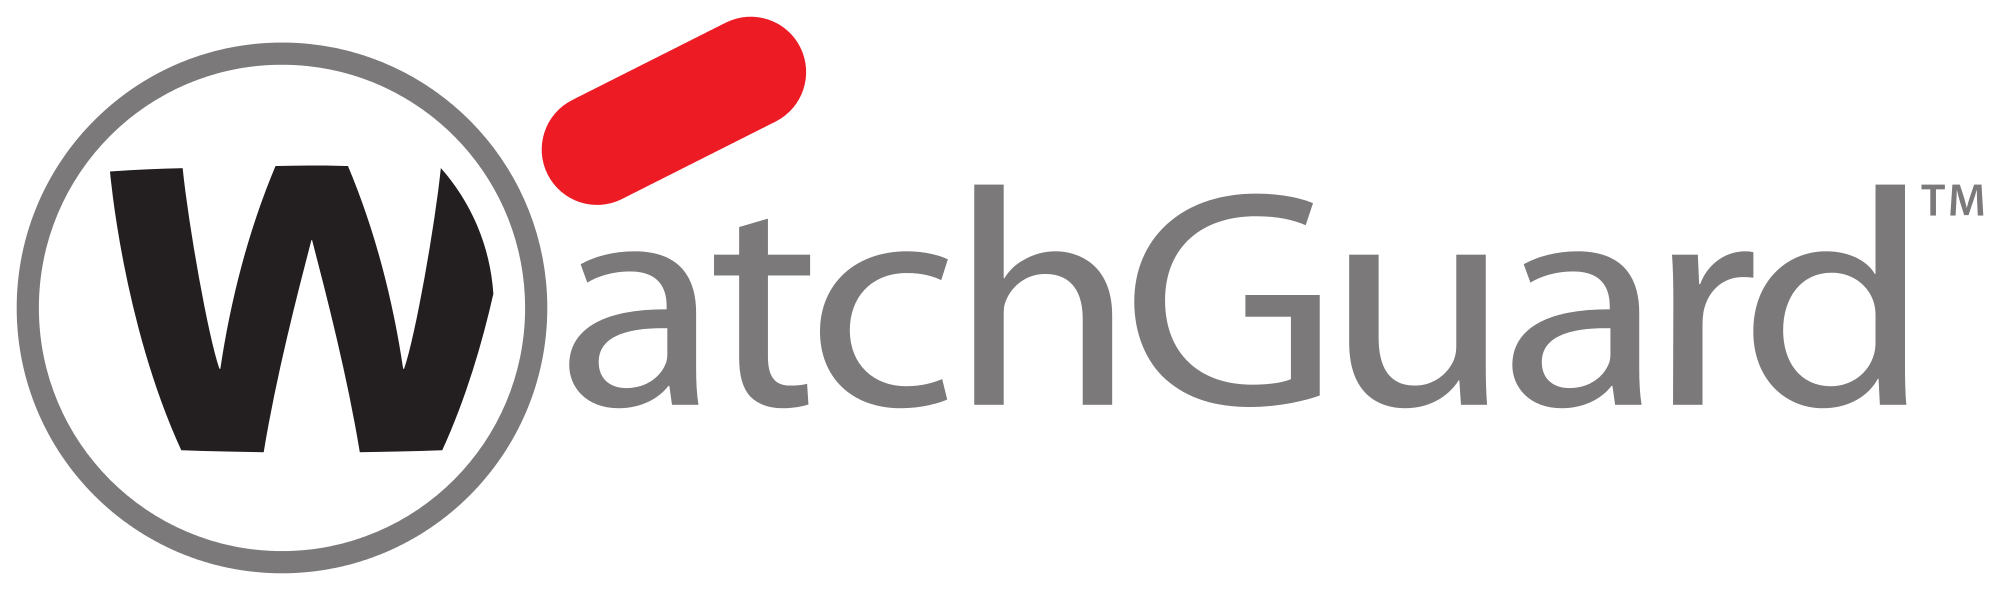 WatchGuard Security Logo